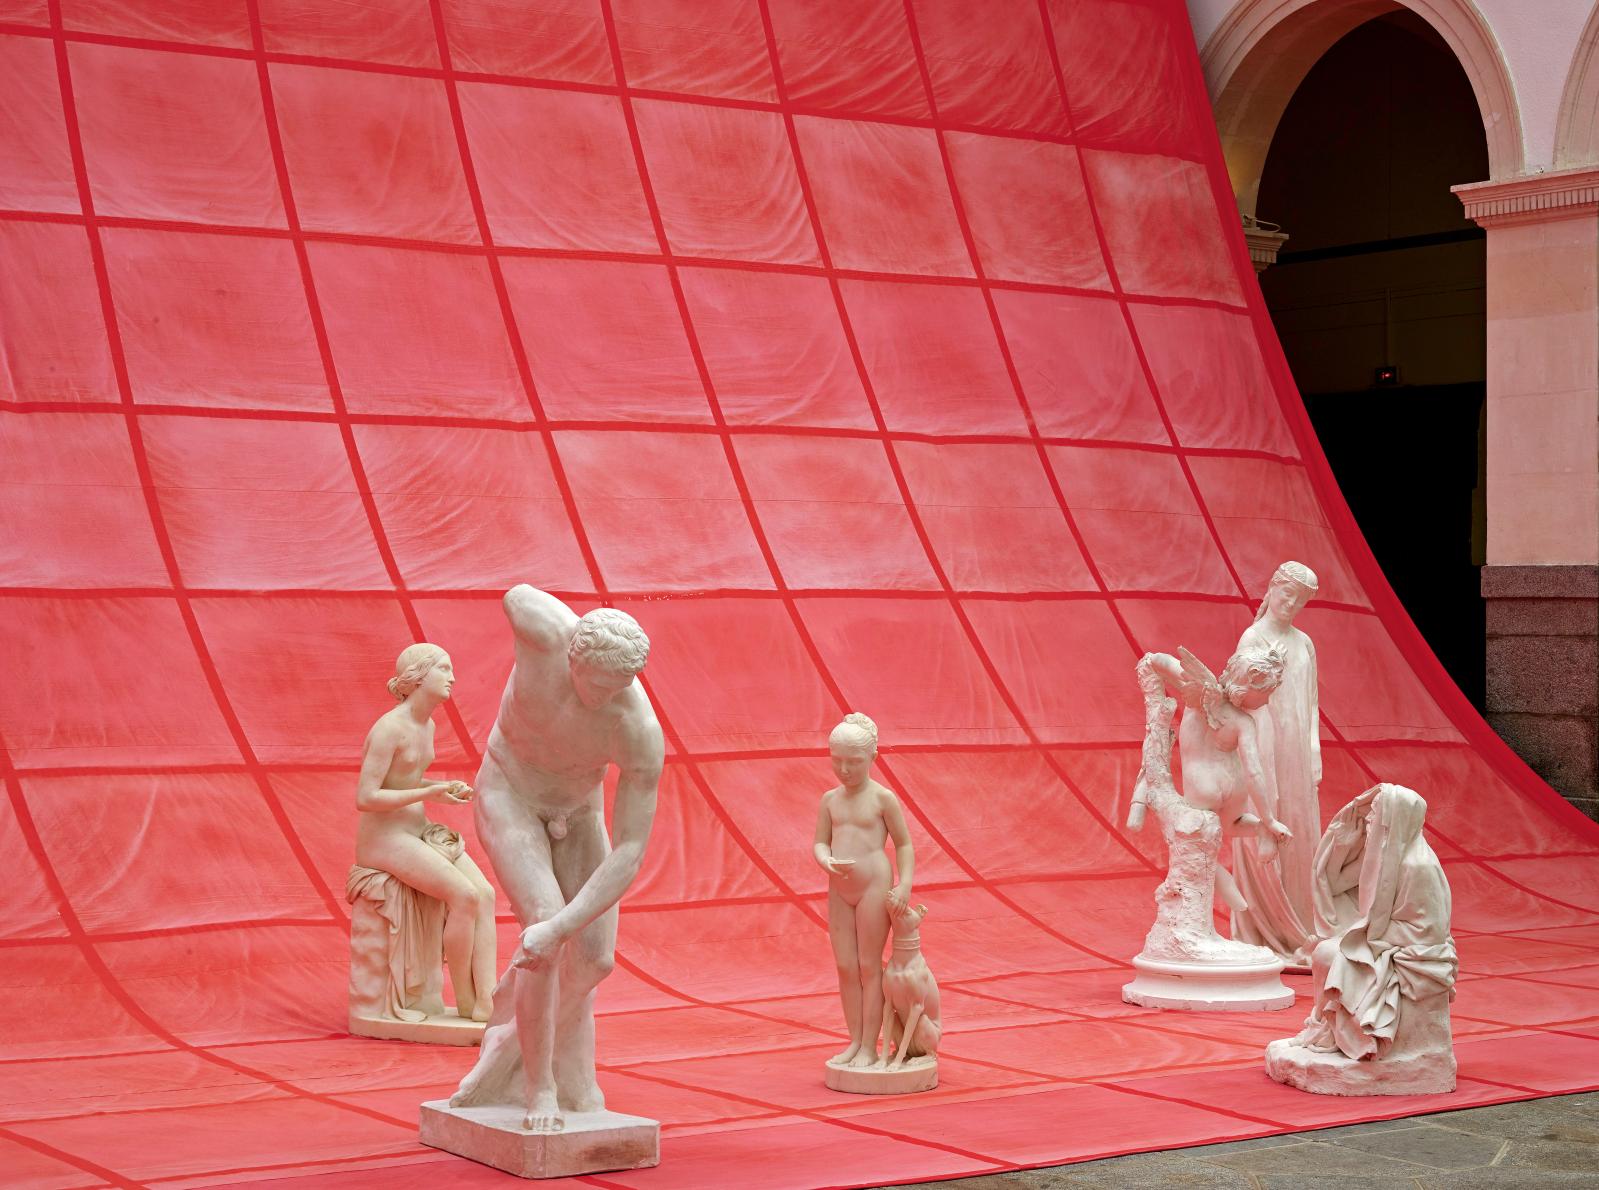 Tableau vivant, installation au musée des beaux-arts de Rennes, 2017. © Jean-Manuel Ralingue/ Musée des beaux-arts de Rennes 